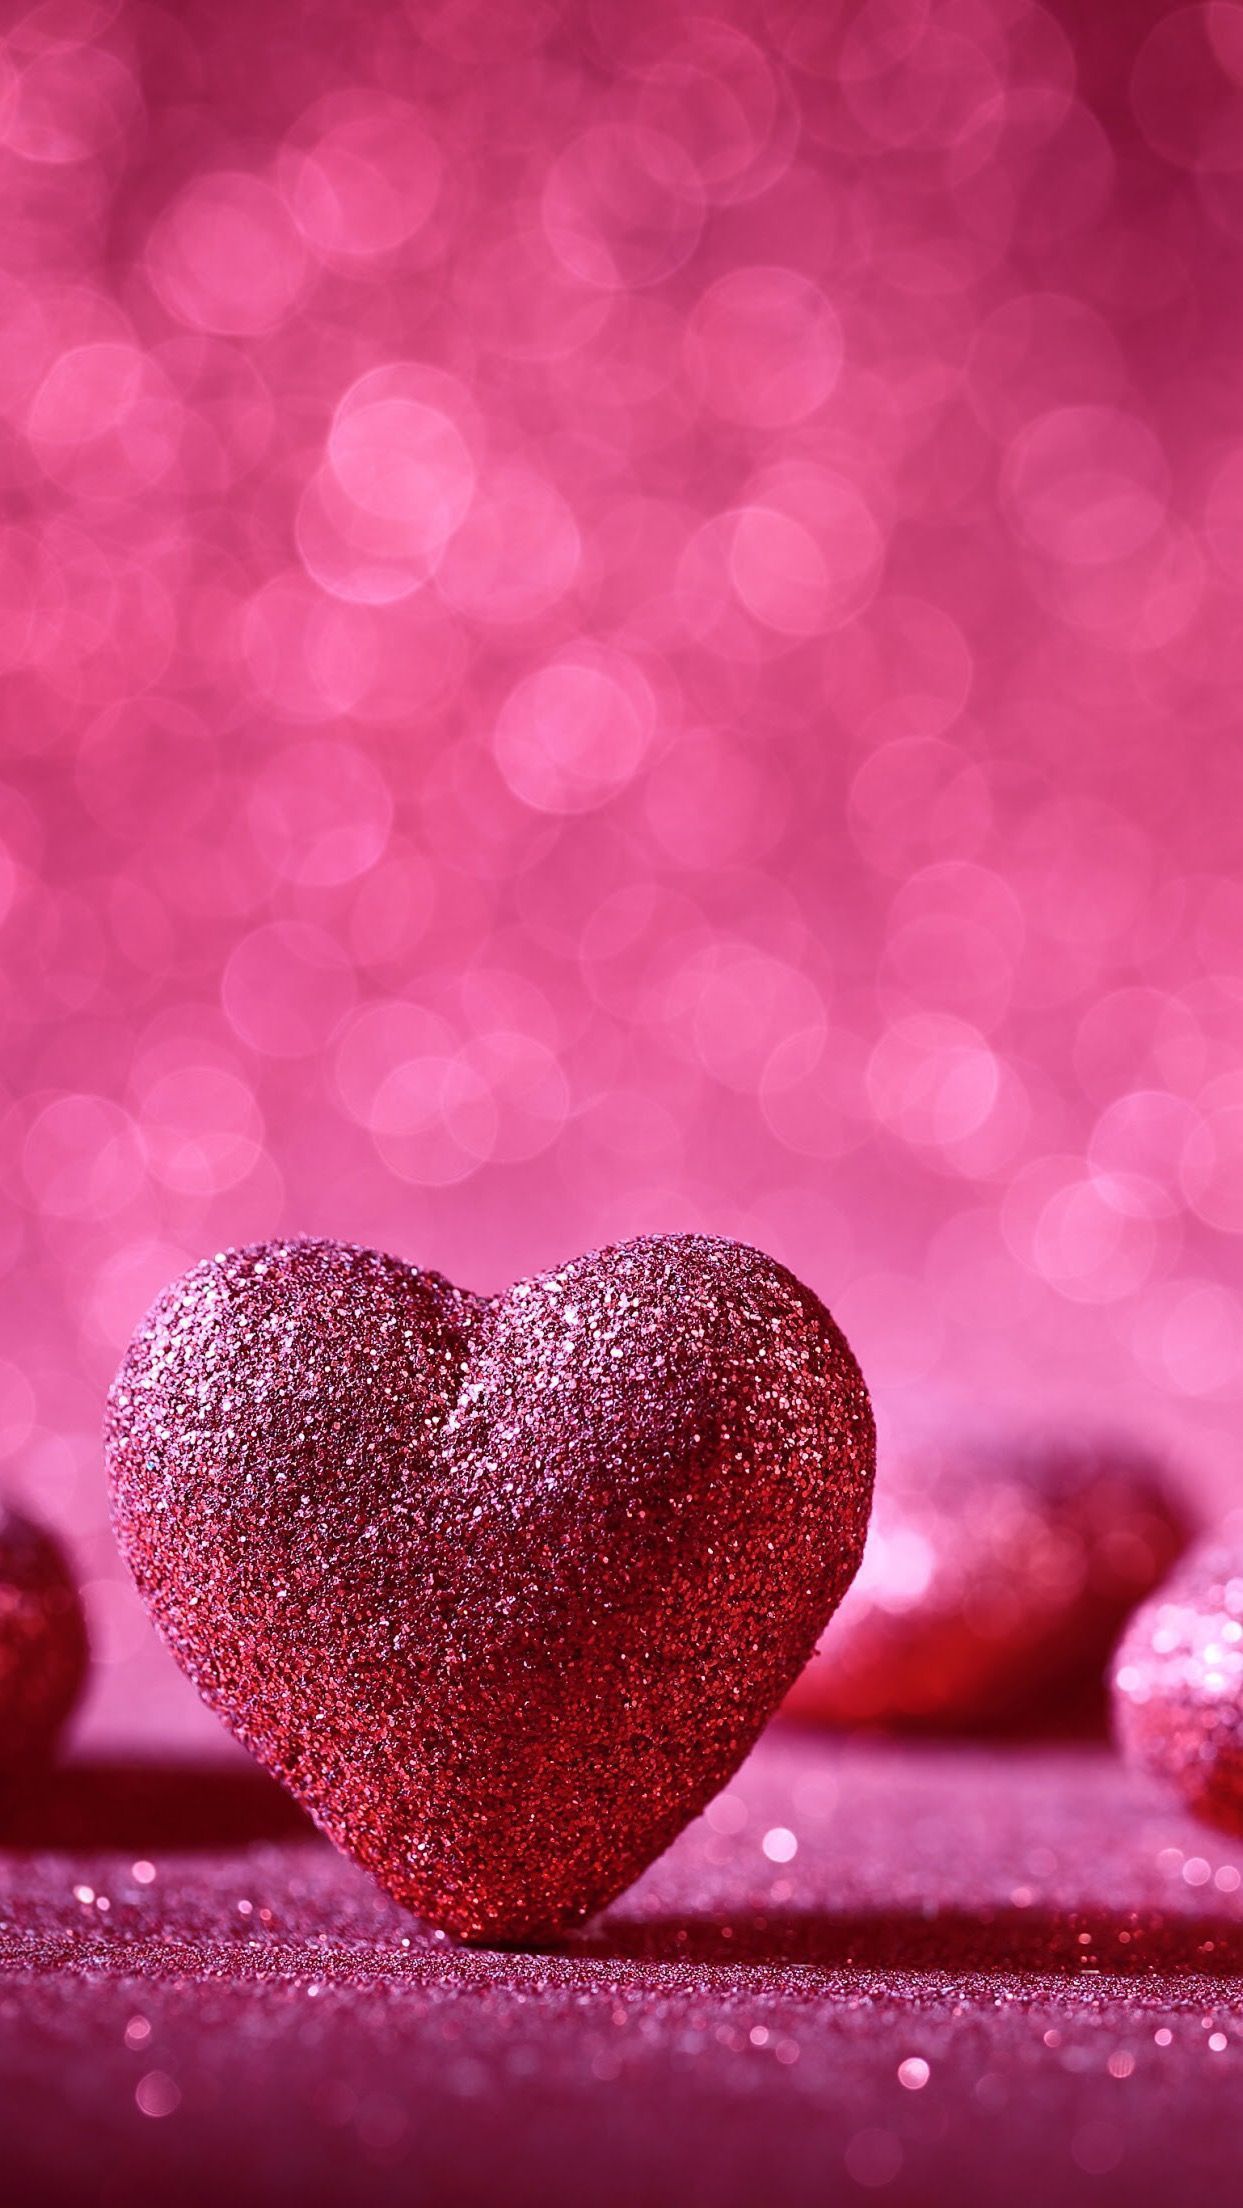 44406 Dark Pink Heart Background Images Stock Photos  Vectors   Shutterstock